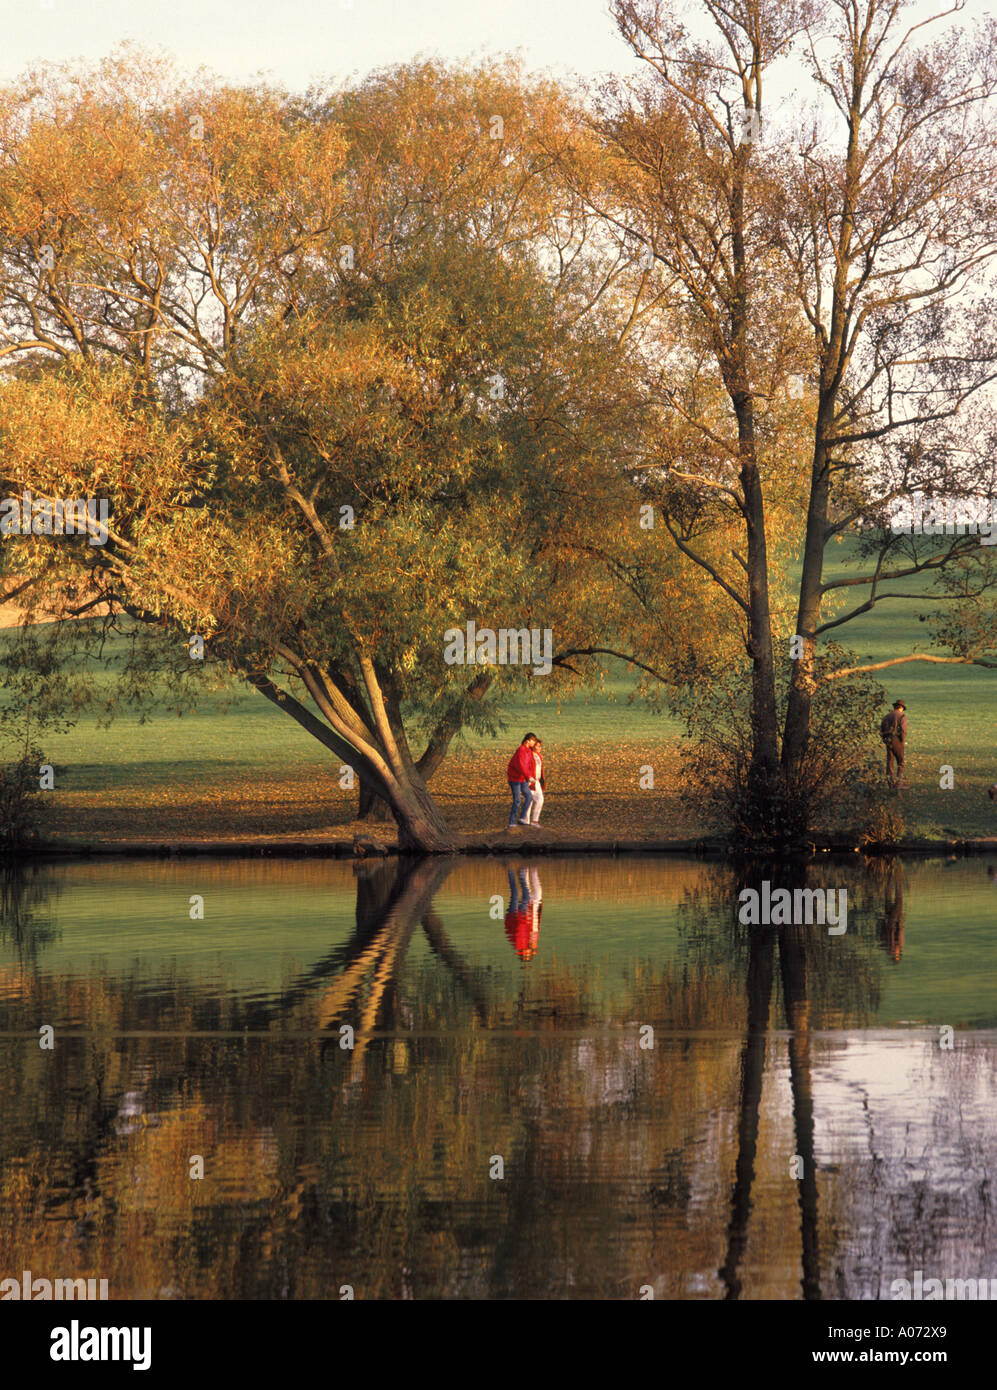 Brentwood Essex Weald Country Park Lake avec des réflexions d'arbre d'automne couleurs et de marcheurs Banque D'Images